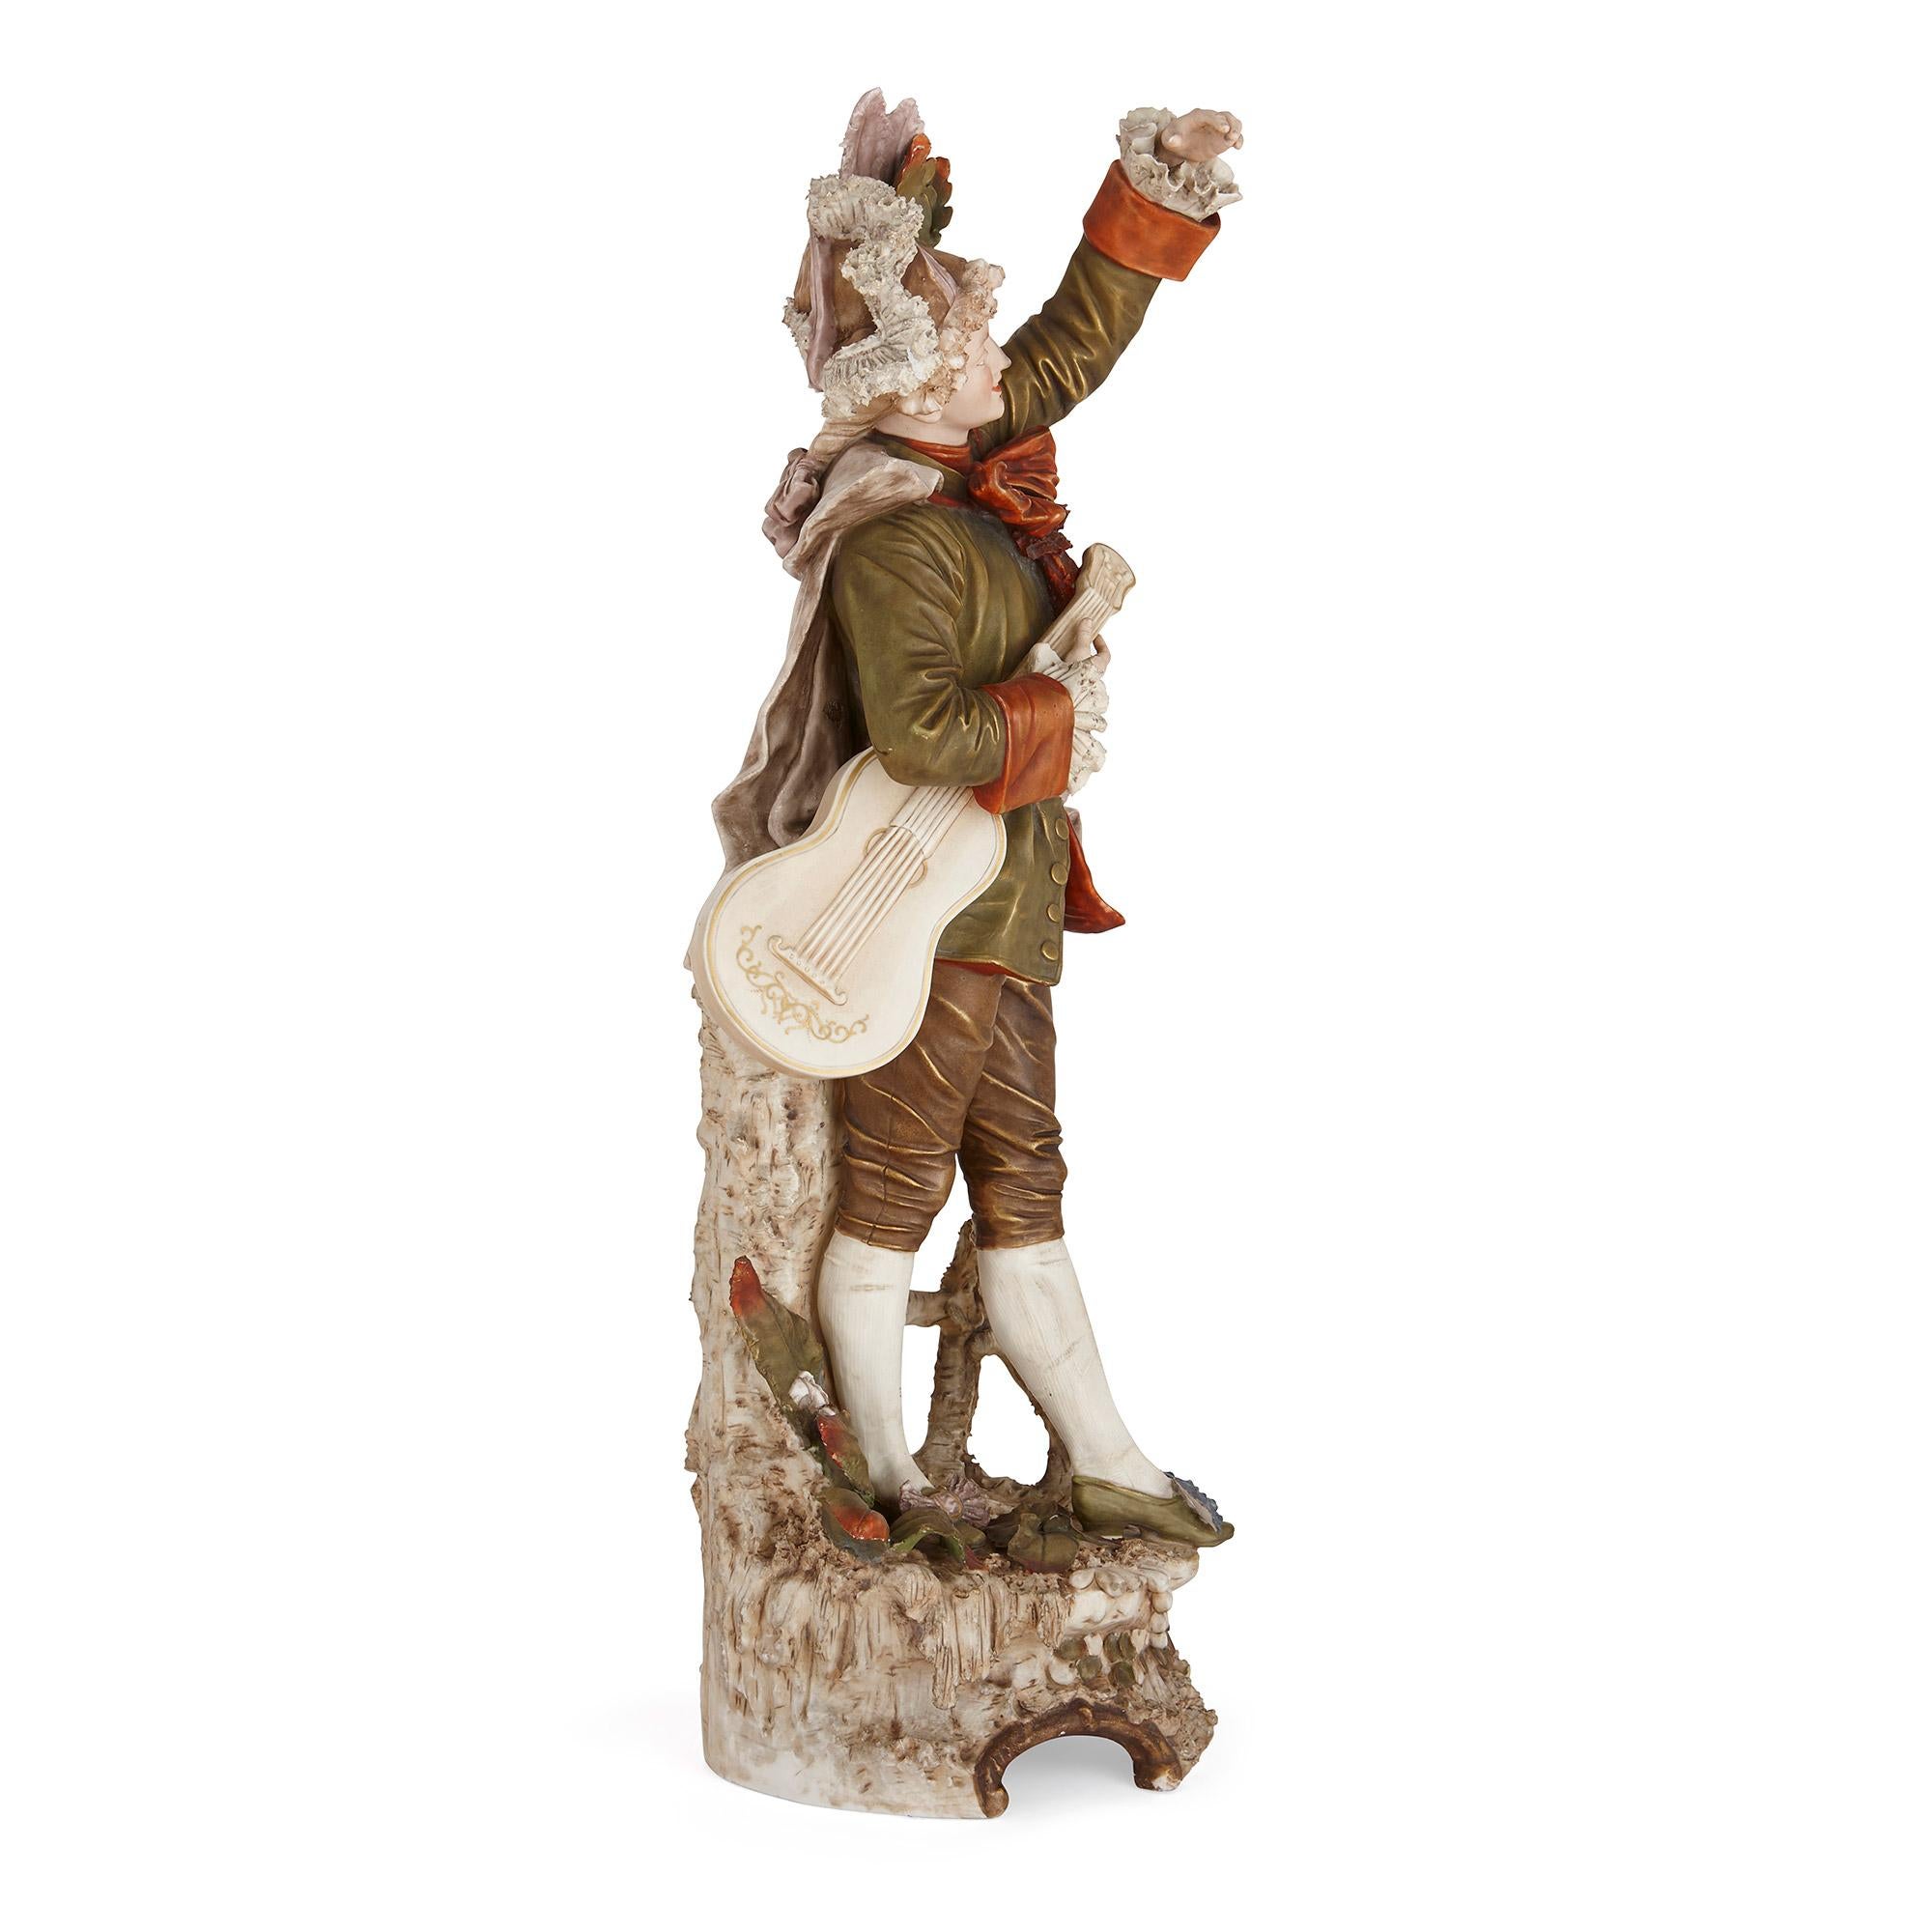 Böhmische Royal Dux Porzellanfigur eines Musikers
Böhmisch, Ende 19. Jahrhundert
Höhe 80cm, Breite 27cm, Tiefe 27cm

Diese charmante Porzellanfigur stellt einen Musiker im Rokoko-Stil dar. Die Figur stammt von Royal Dux, einem Unternehmen, das